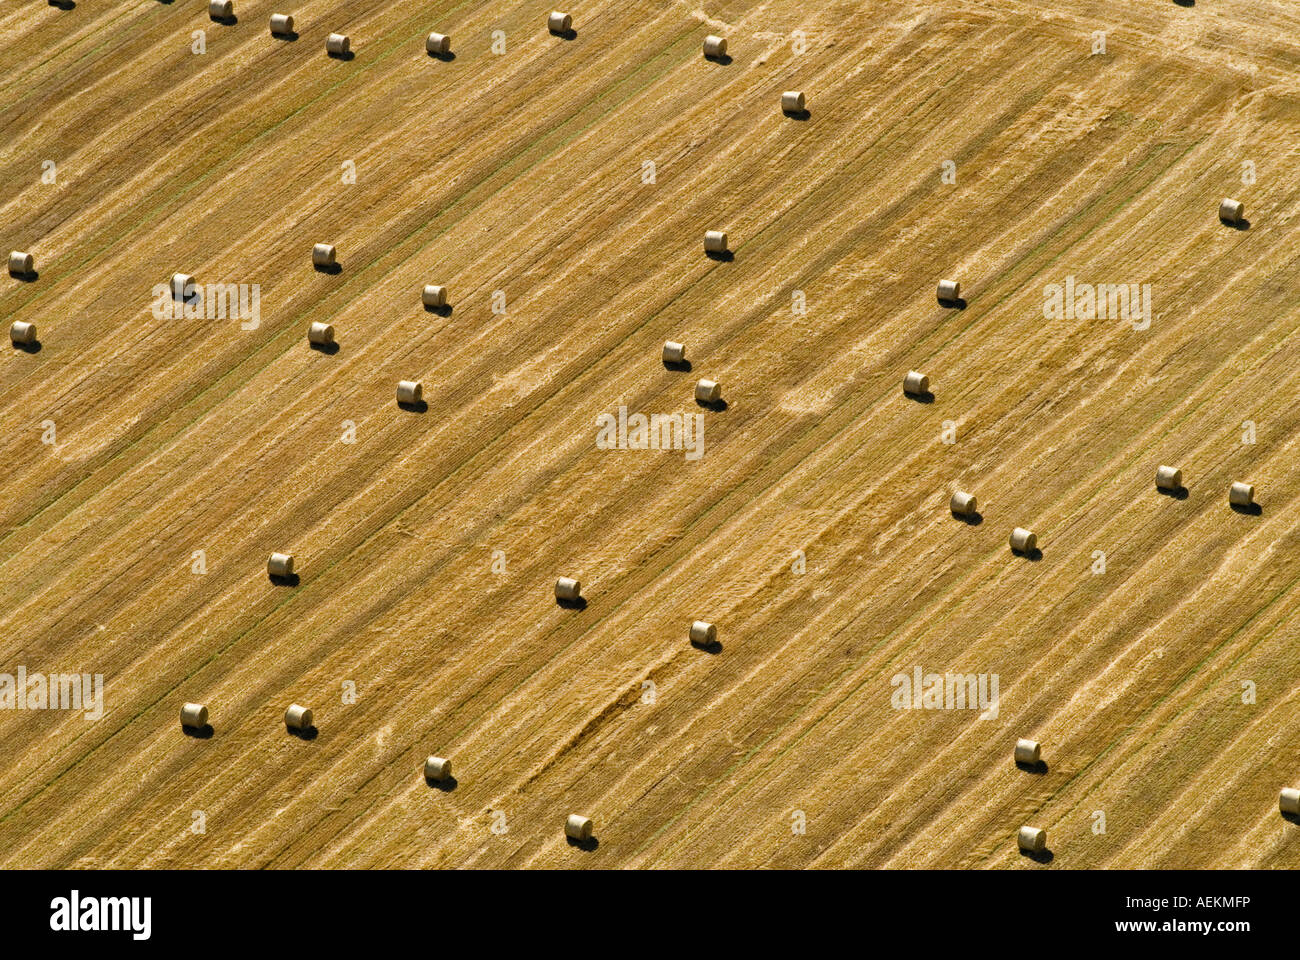 Vue aérienne de la campagne anglaise les balles de foin Northamptonshire UK. HOMER SYKES Banque D'Images